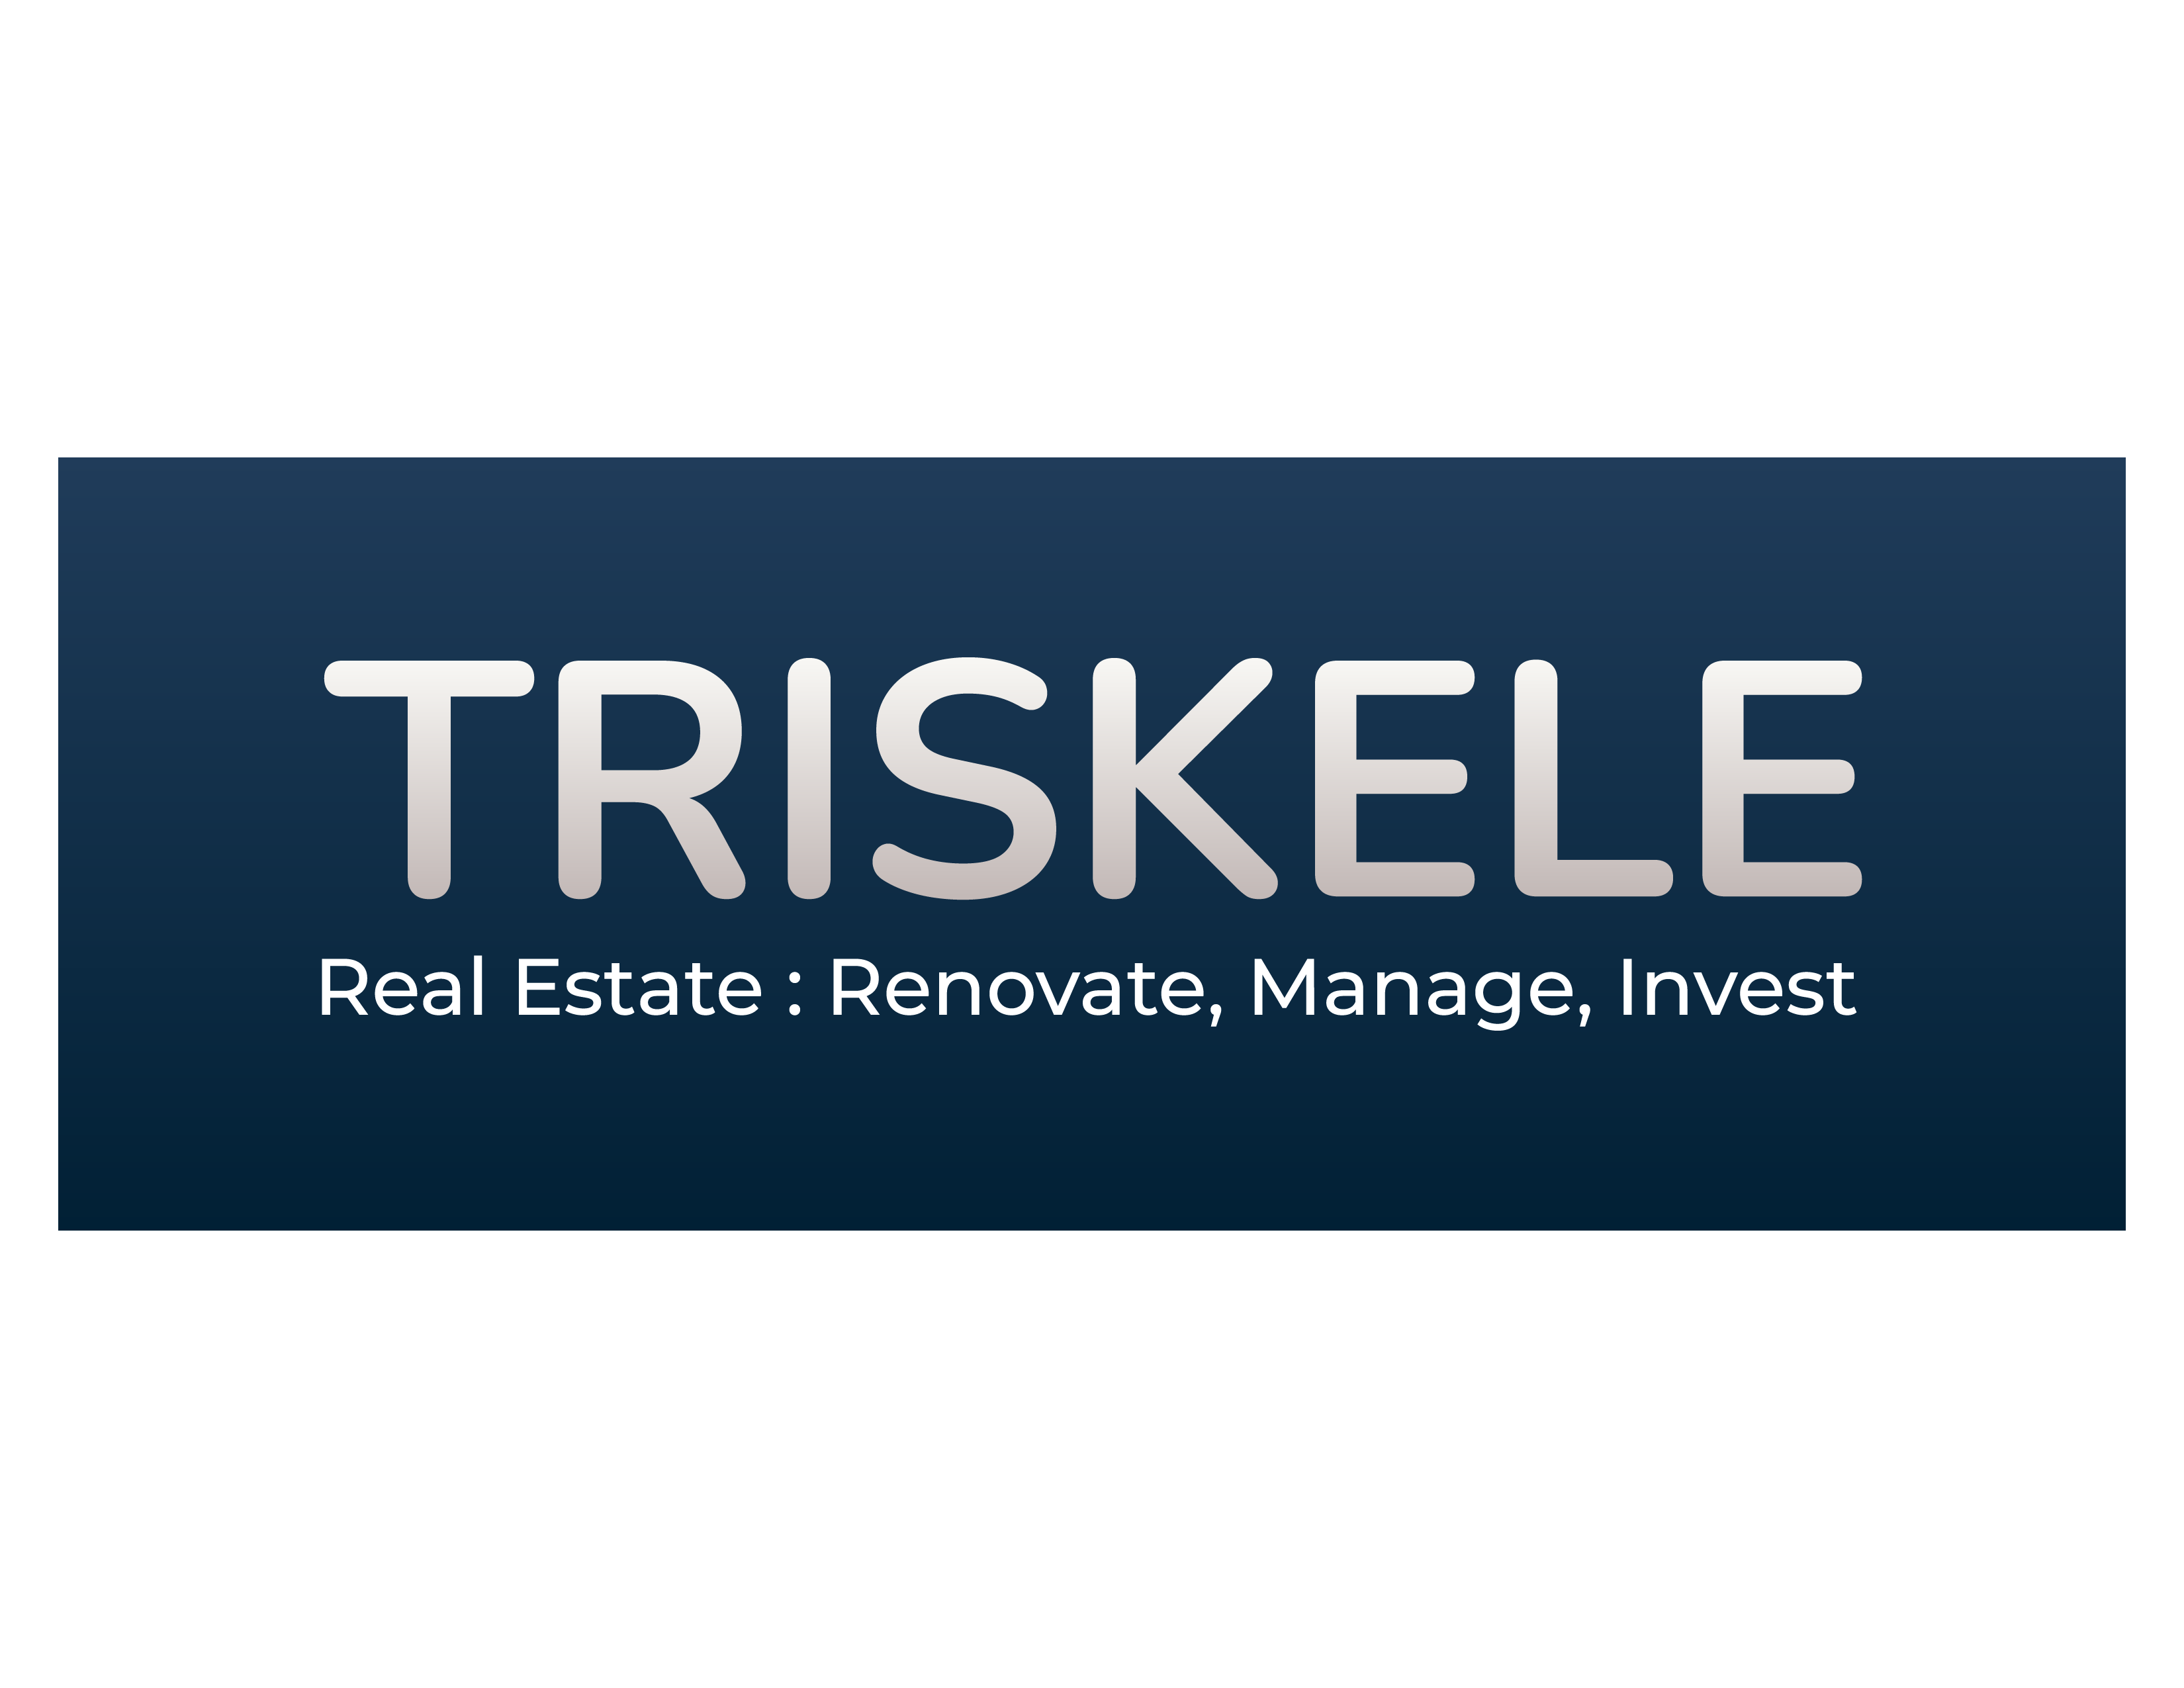 Triskele's logo